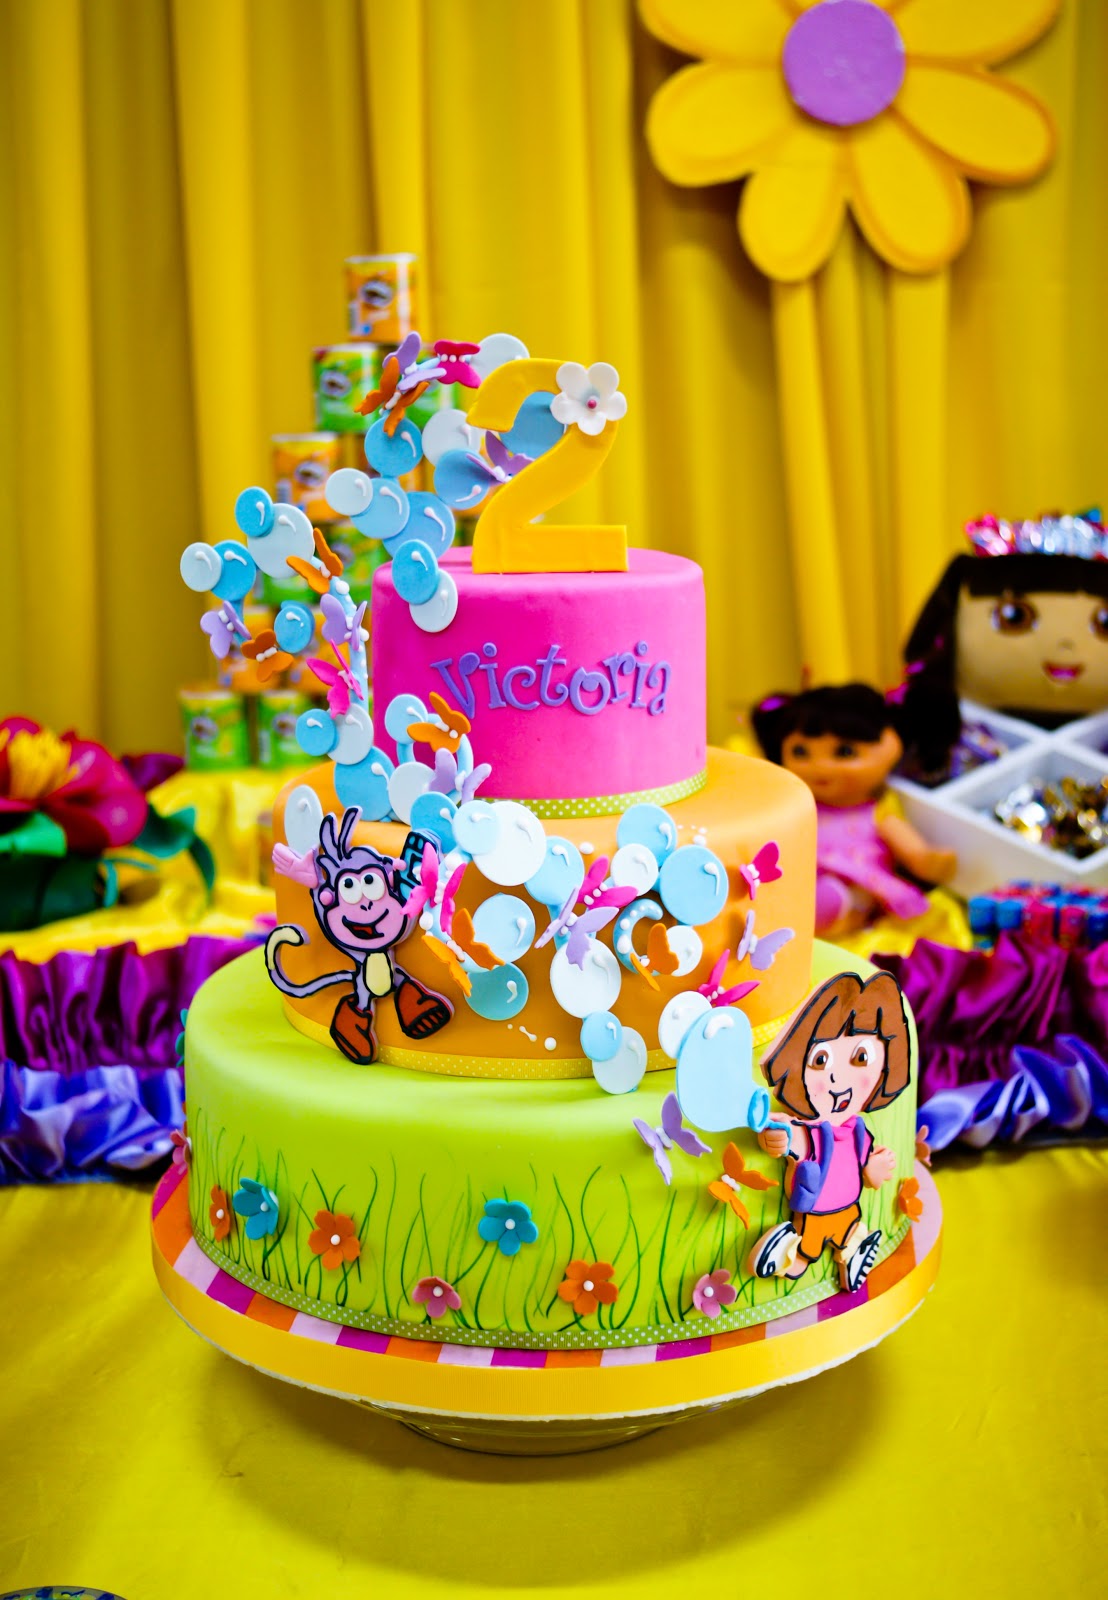 Delicatesse Postres: Celebrando con Dora - Vicky's 2!